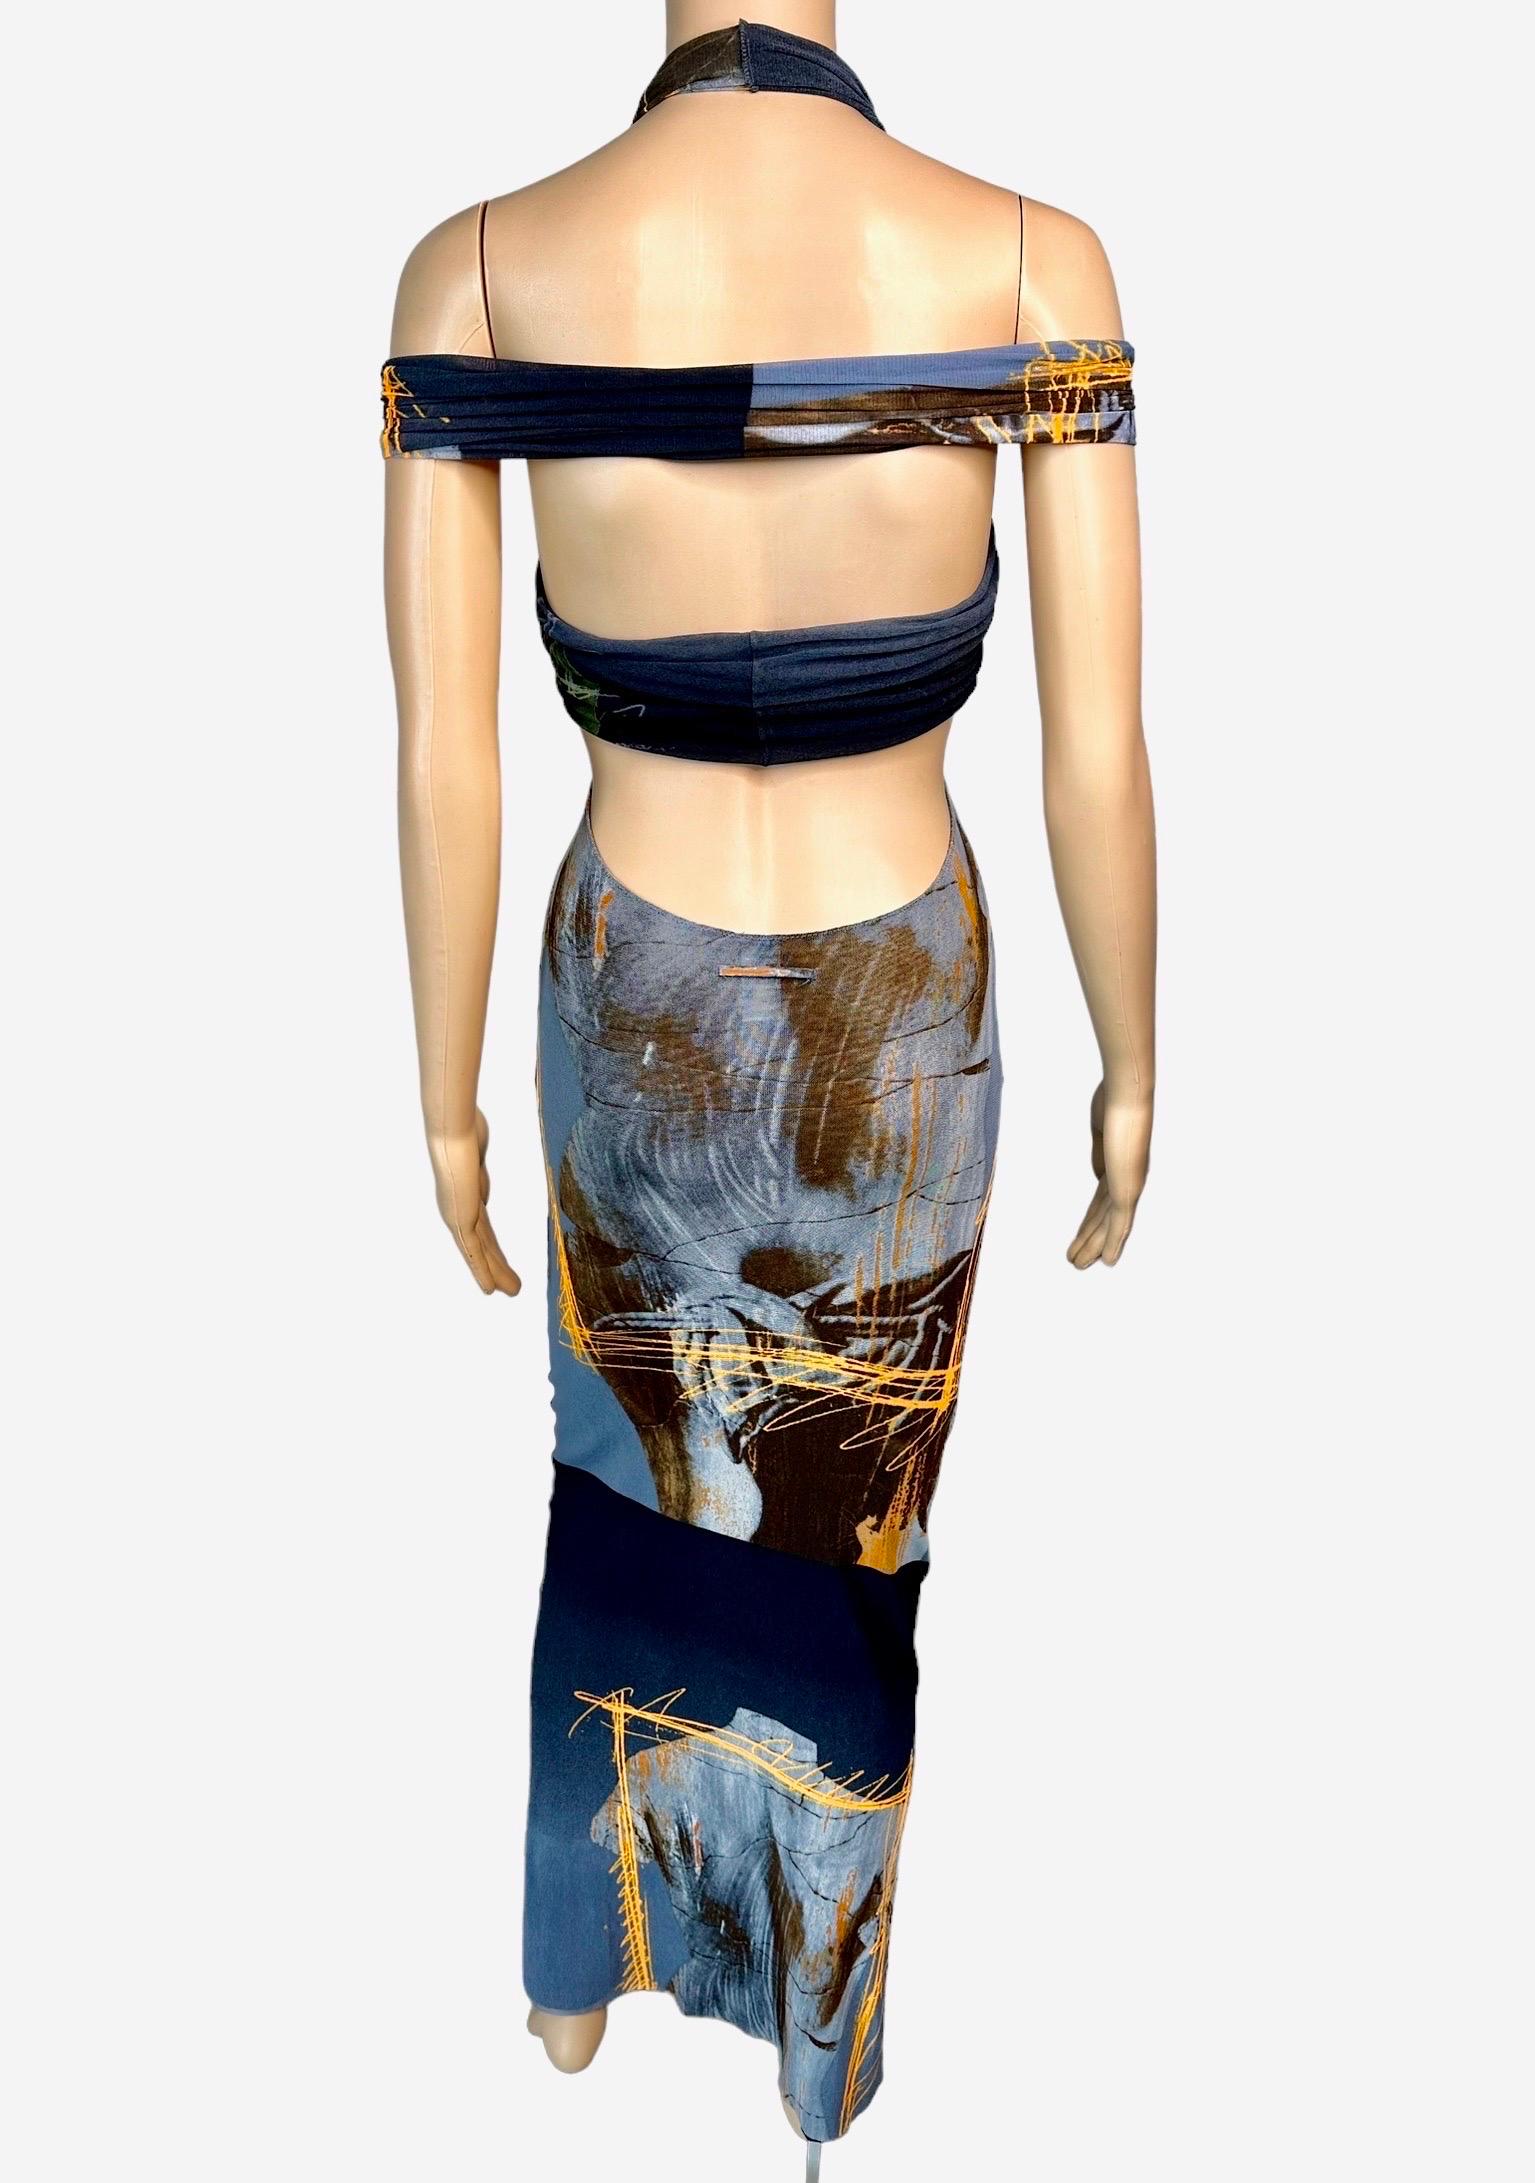 Jean Paul Gaultier Soleil S/S 1999 Vintage Venus De Milo Cutout Mesh Sheer Dress 2